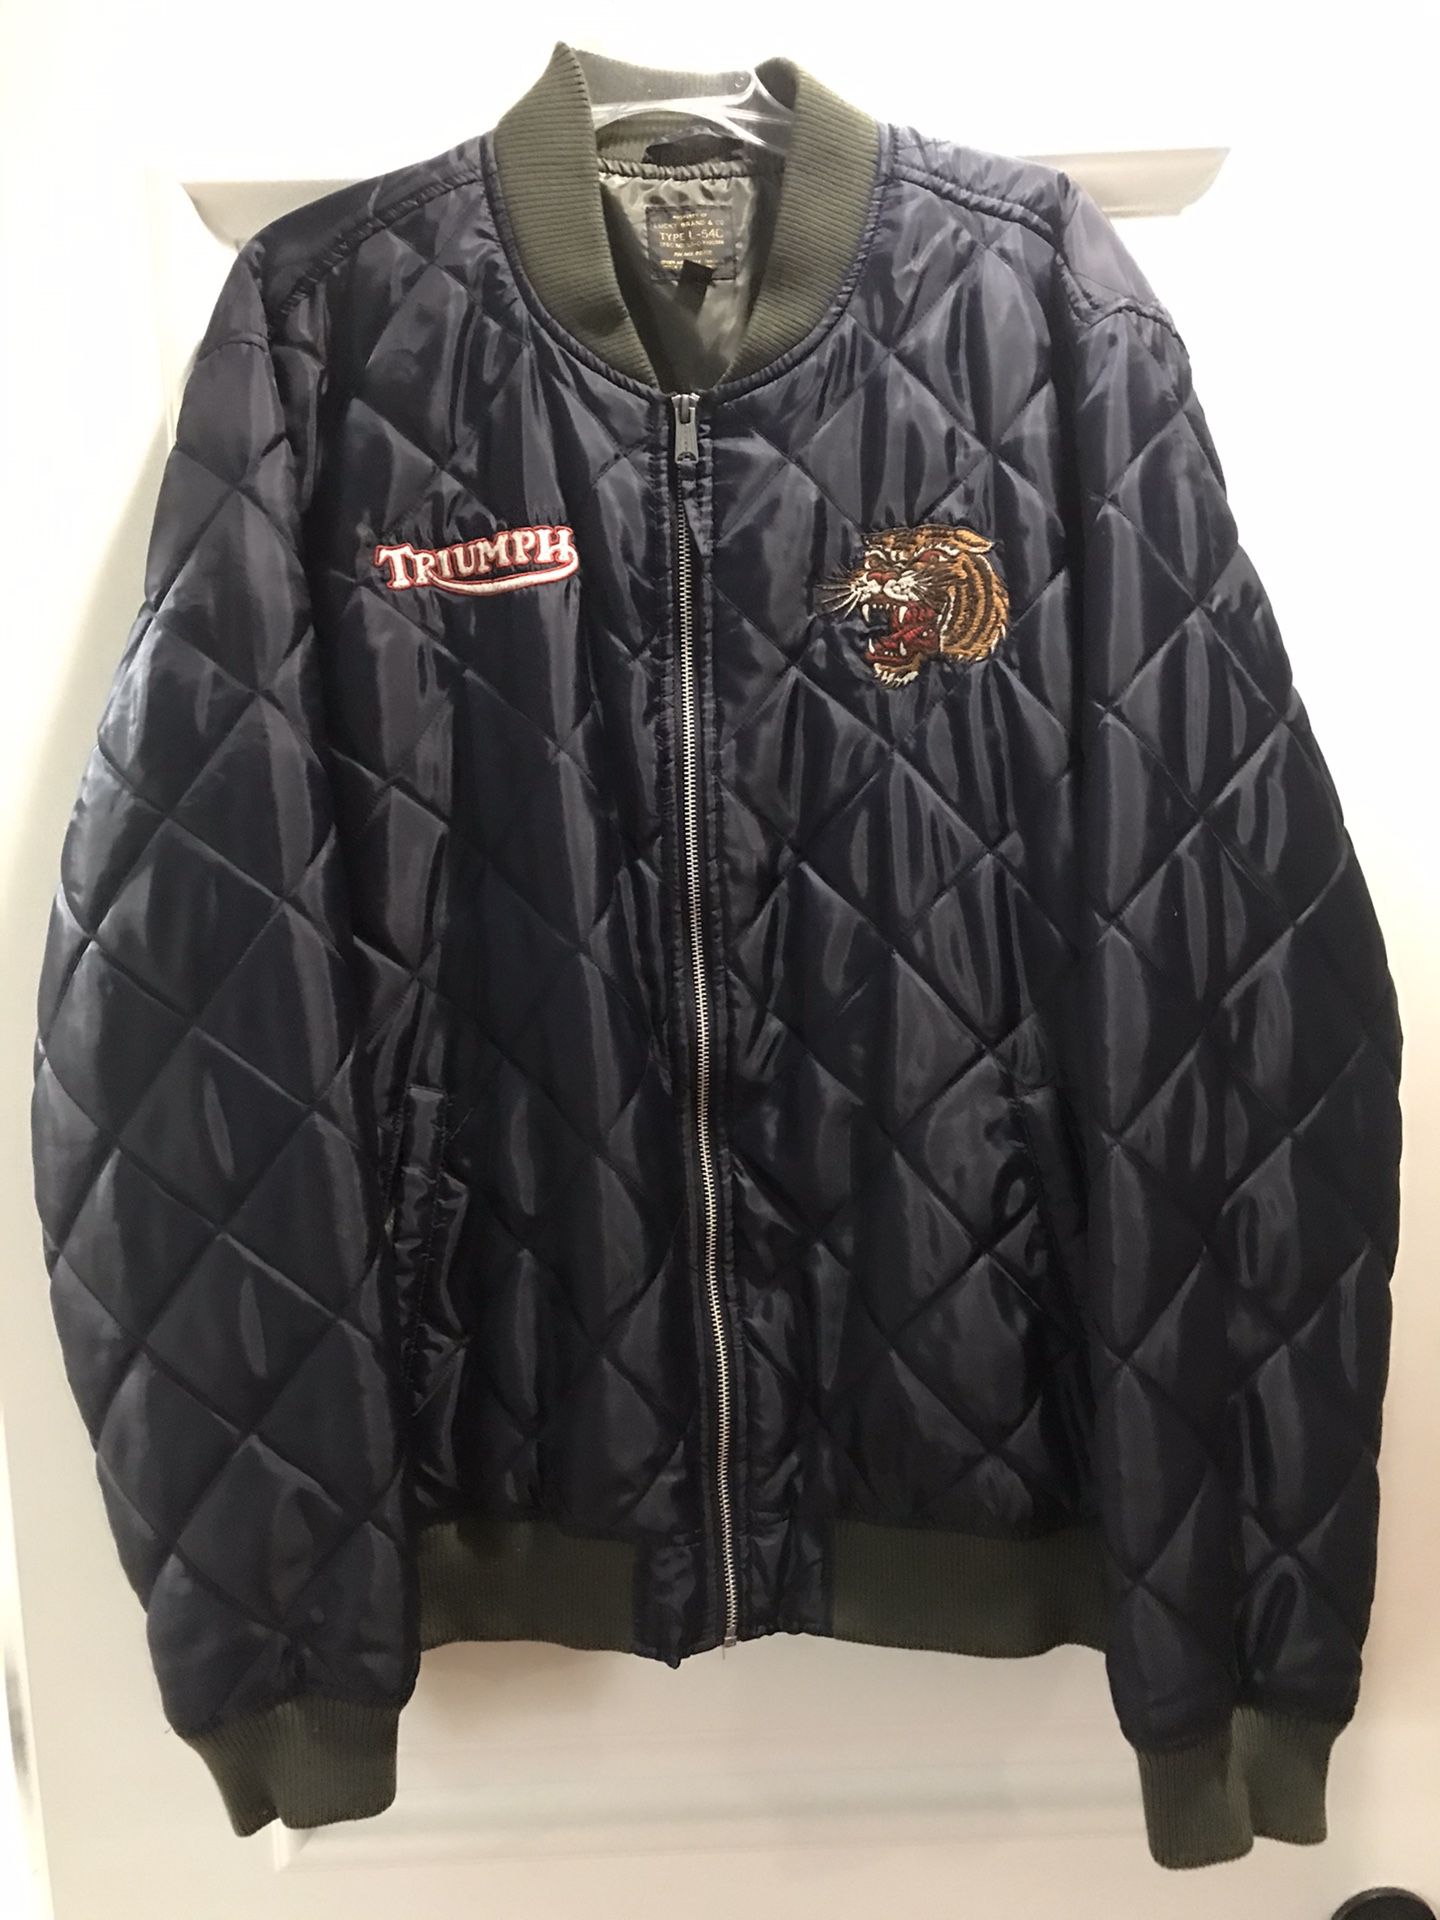 Triumph jacket size XXL Lucky brand